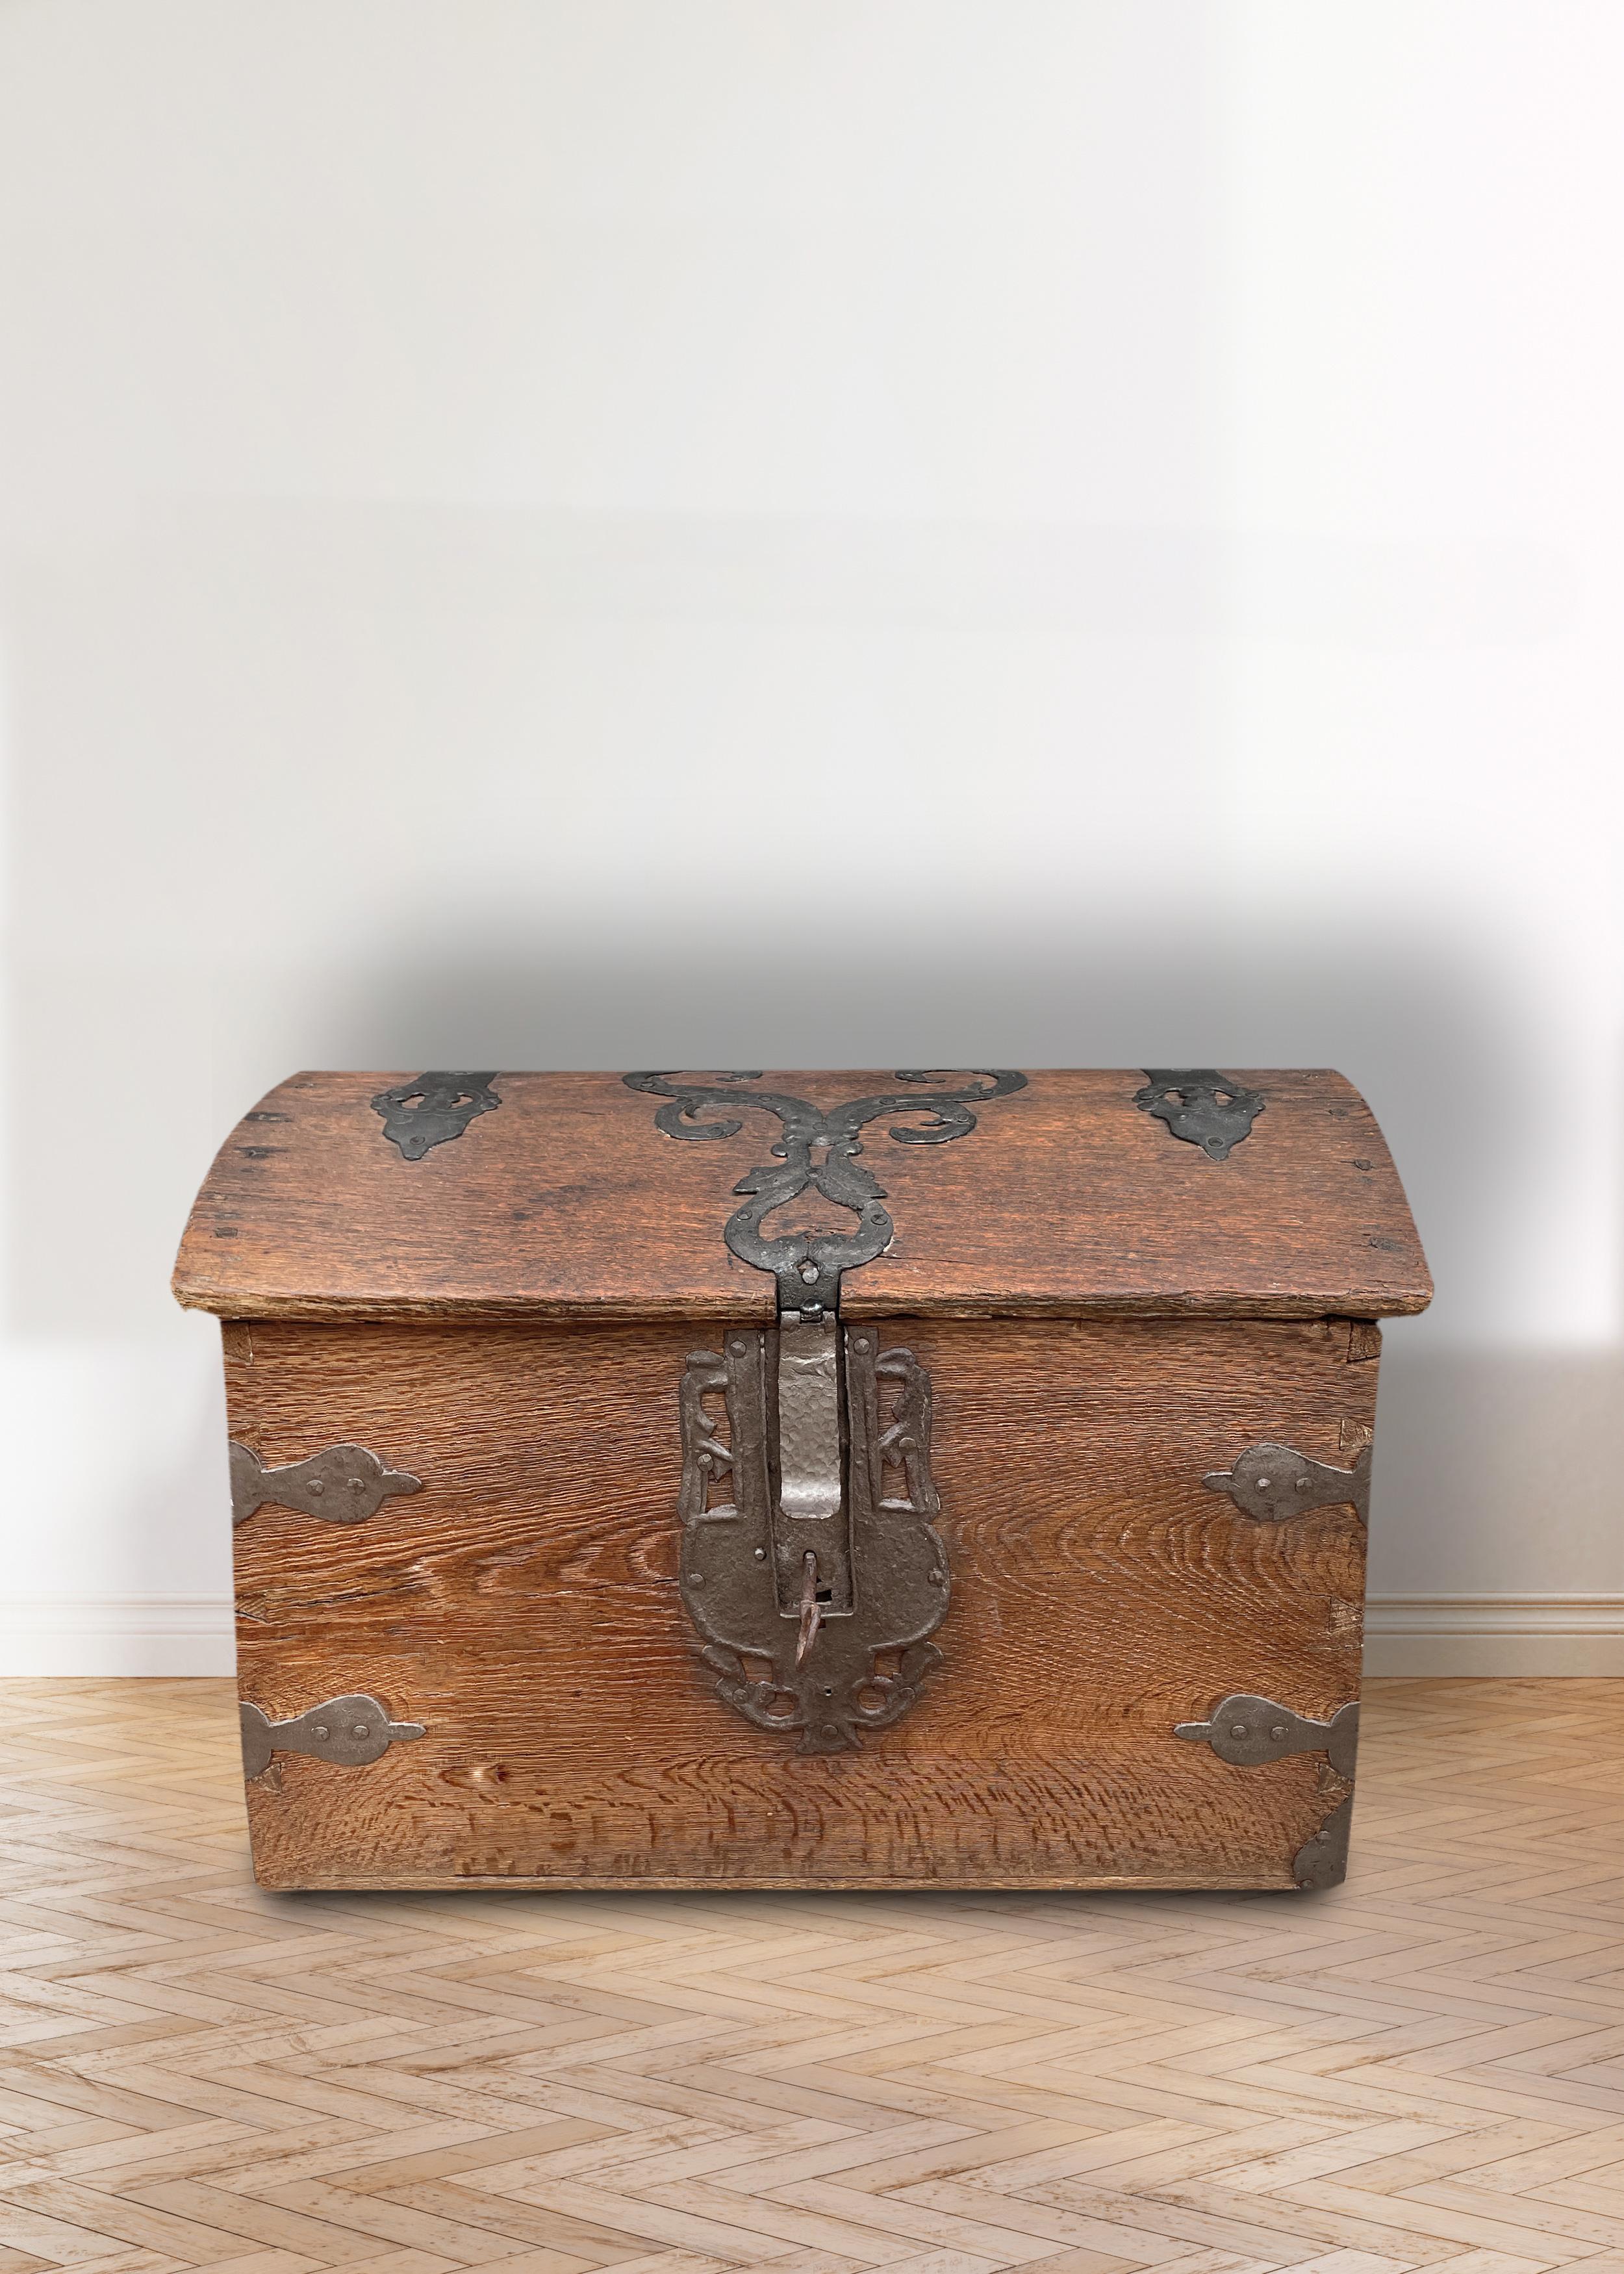 Kommode-Koffer in Eiche

H.47 cm - L.71 cm - T.45 cm

Antike Kommode aus Eichenholz. Der Deckel hat die klassische 